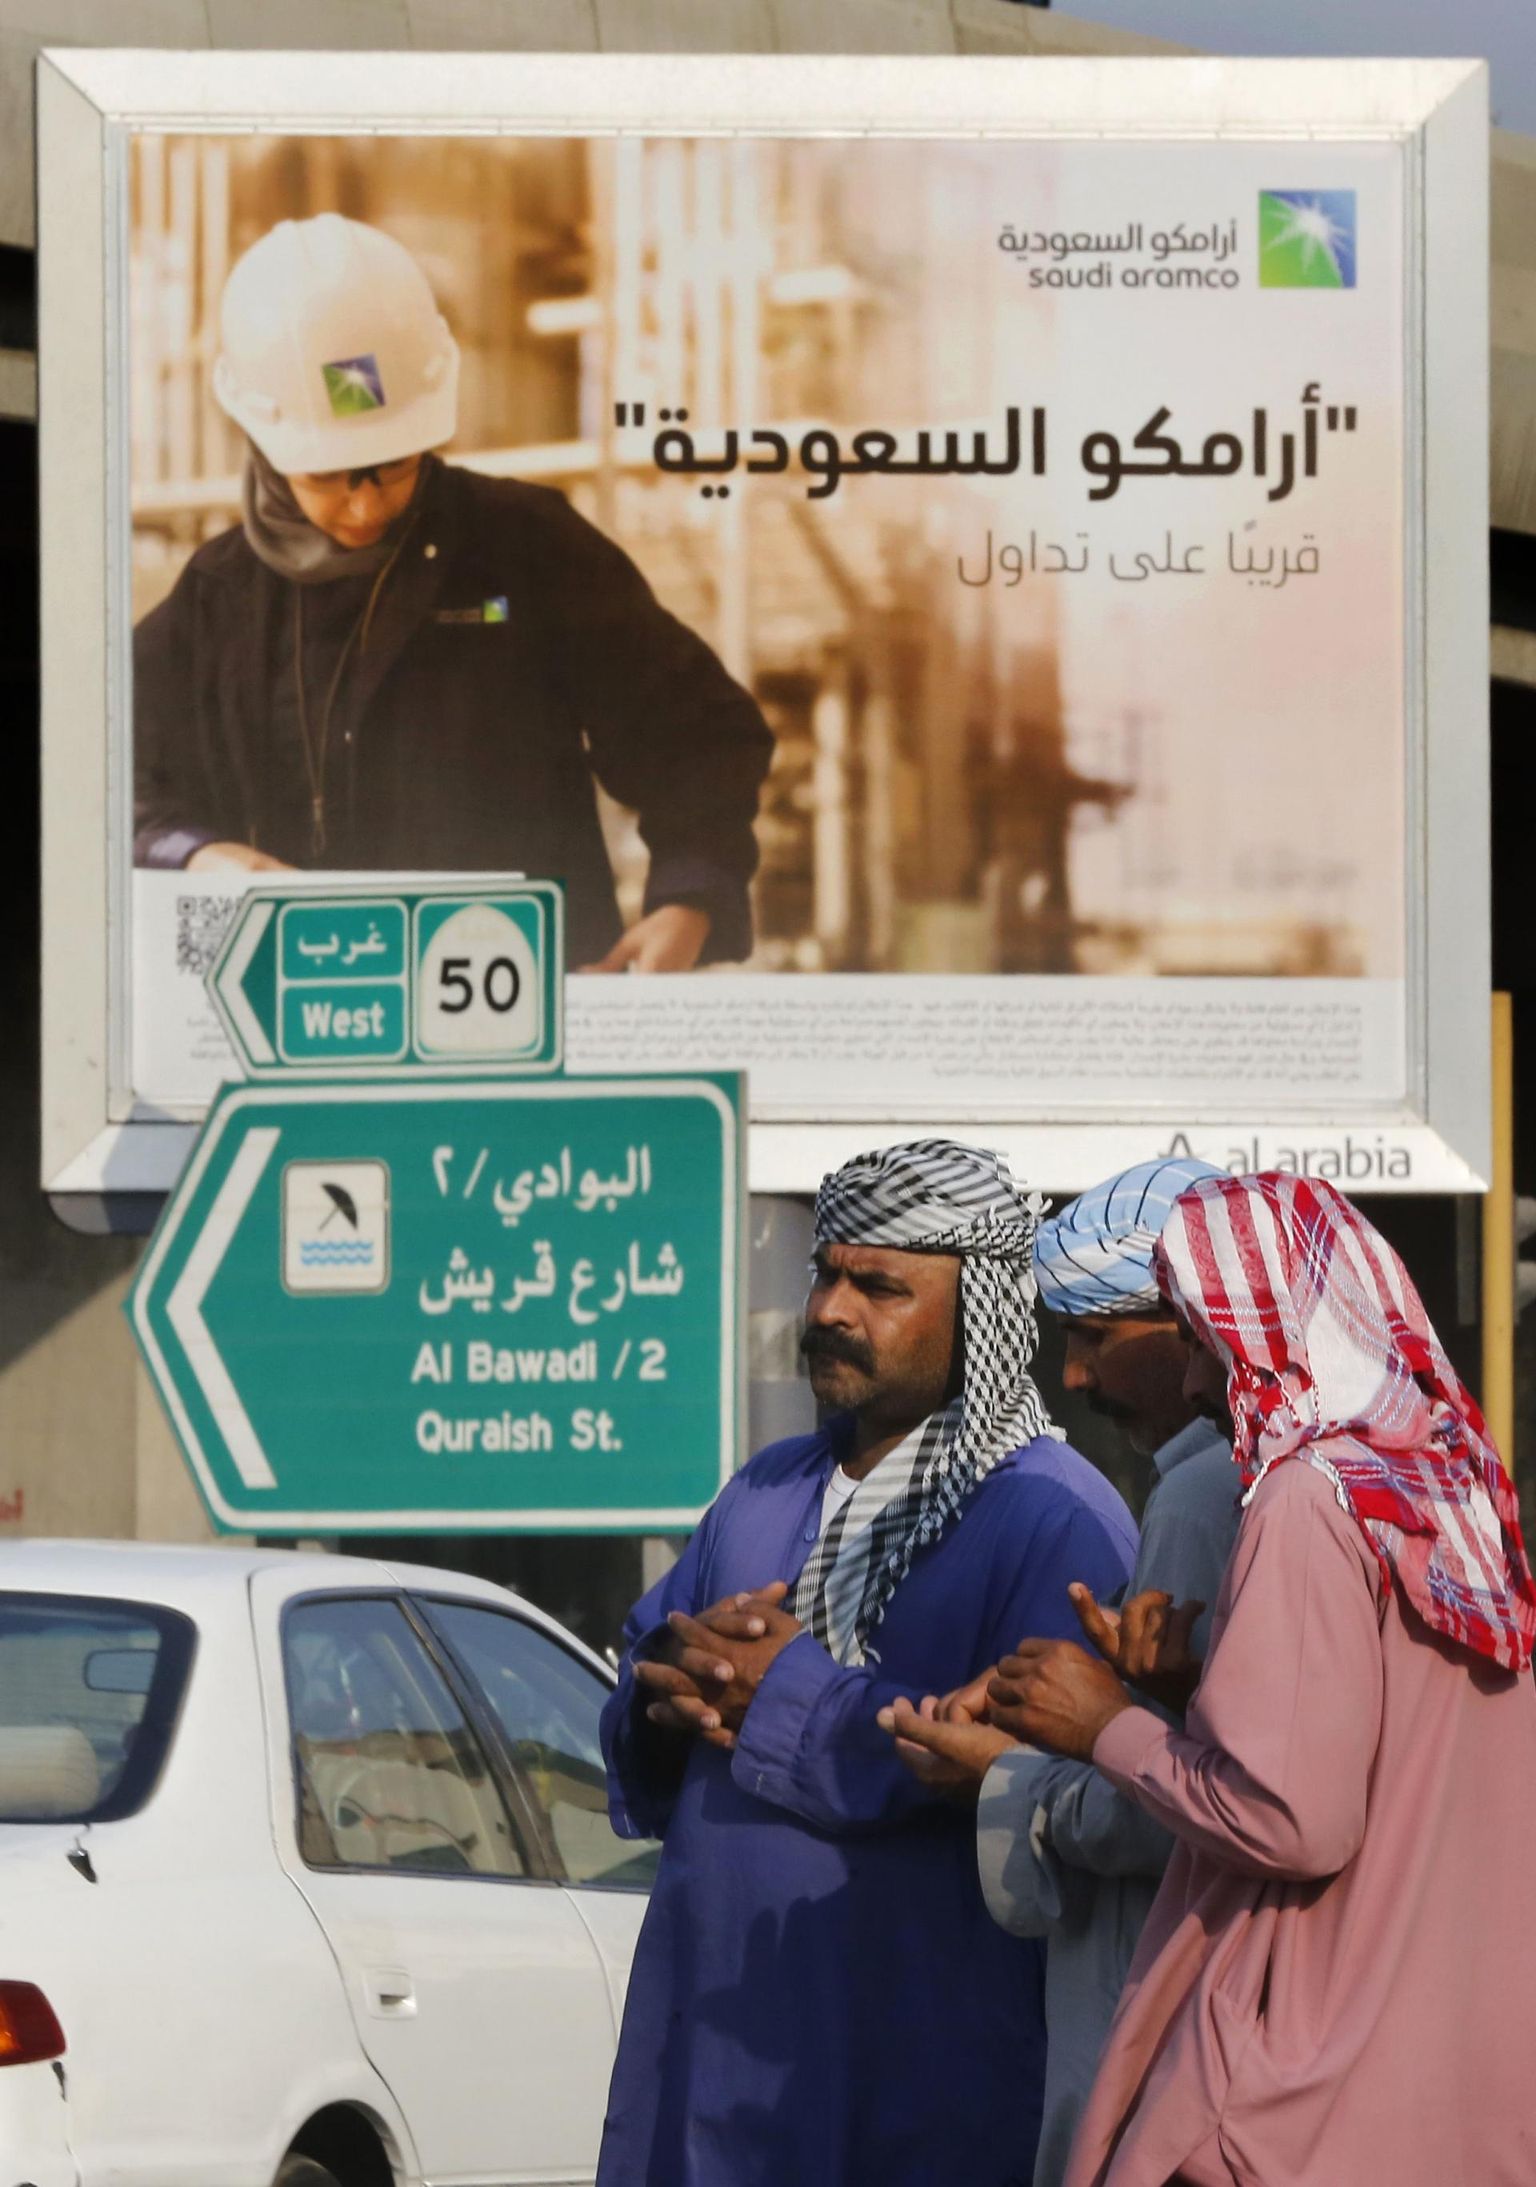 Kohalikud töötajad plakati ees, mis reklaamib Saudi Aramco aktsiamüüki: araabiakeelsel plakatil seisab: «Saudi Aramco, peagi börsil».